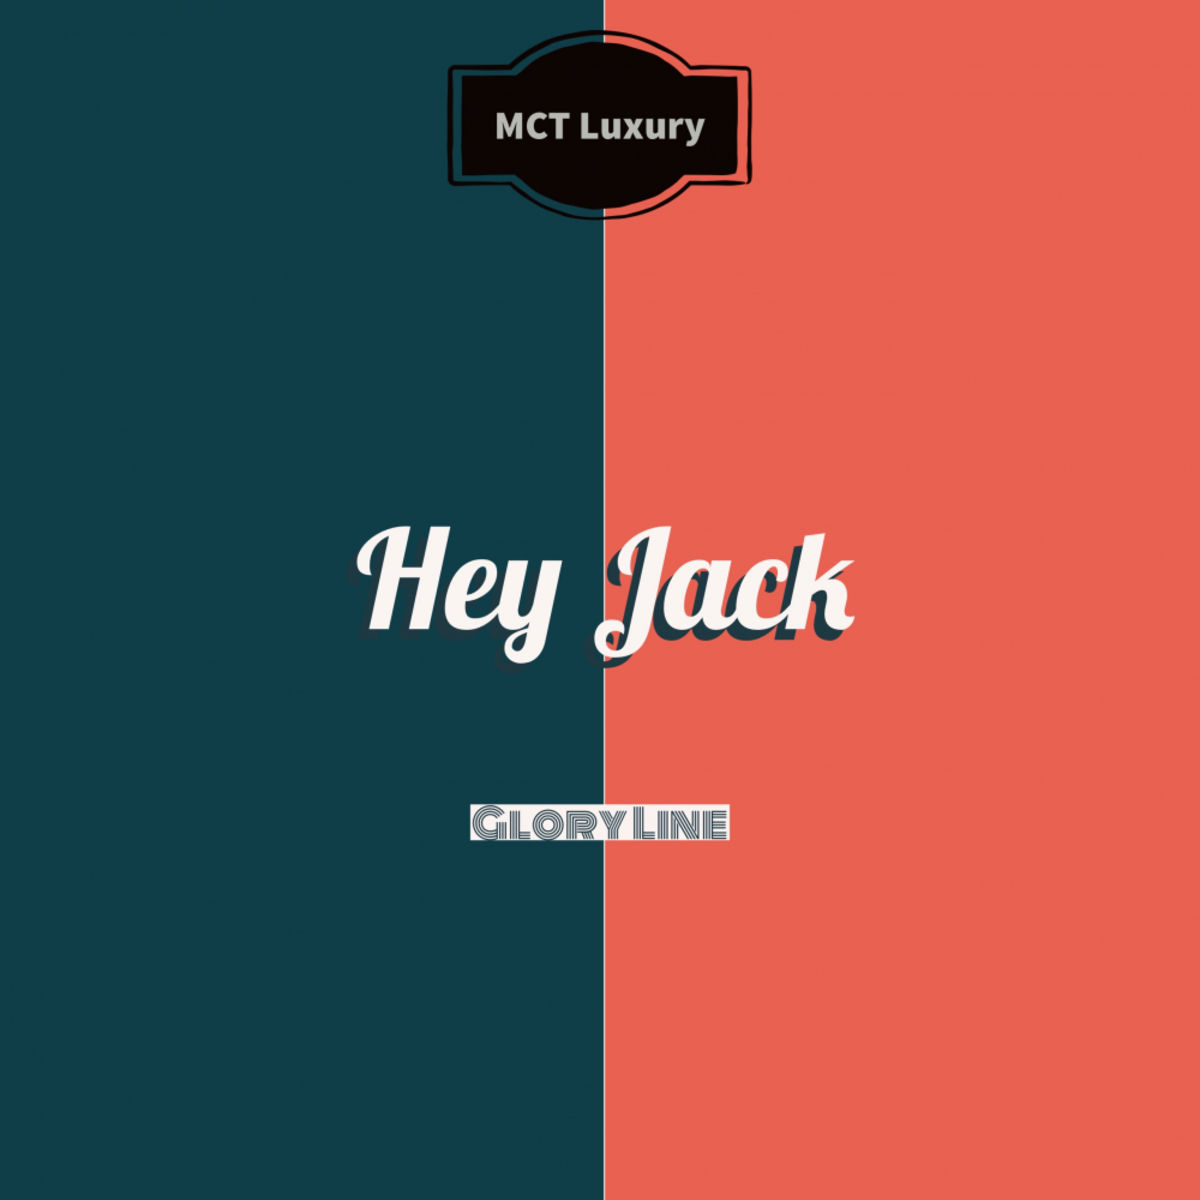 Hey Jack - Glory Line / MCT Luxury